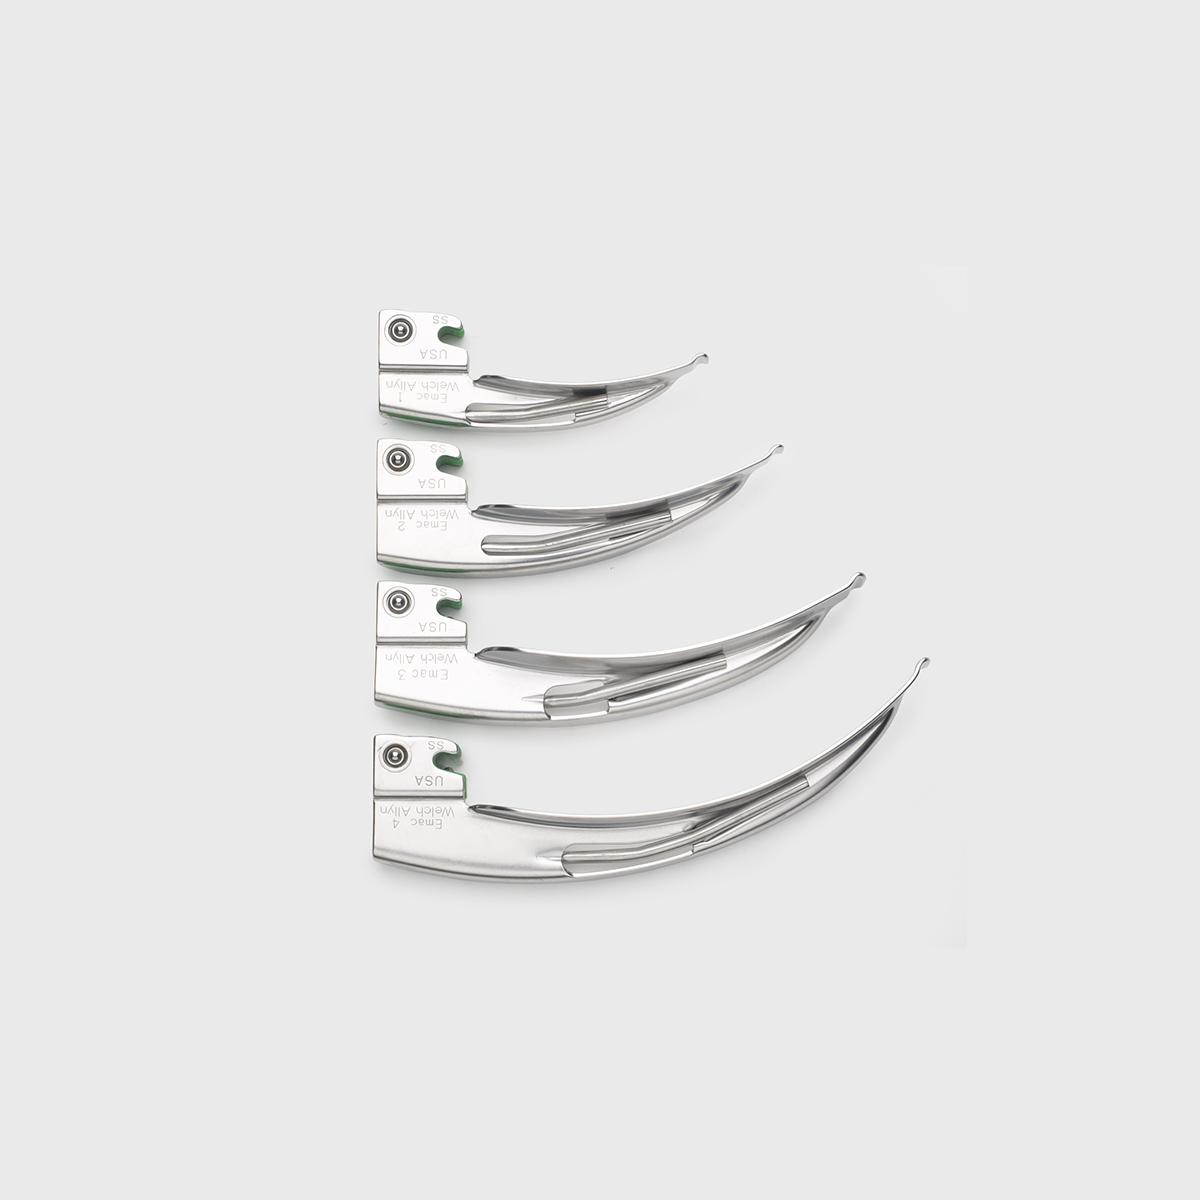 Cztery łyżki systemu laryngoskopowego Macintosh w różnych rozmiarach